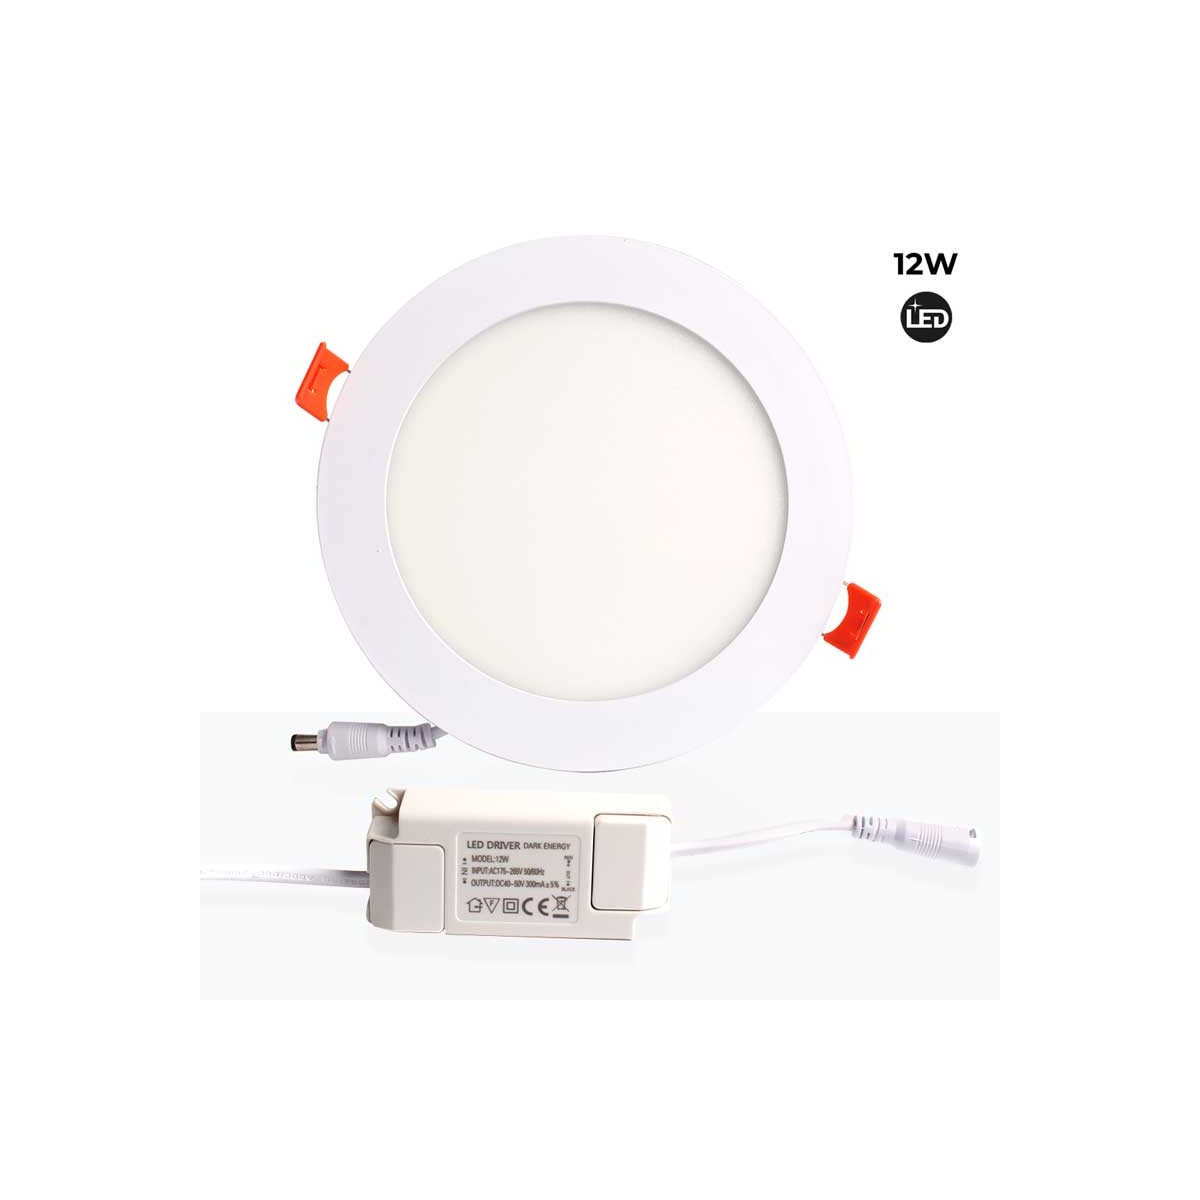 12W runder LED-Einbau-Downlight Schnitt Ø155mm